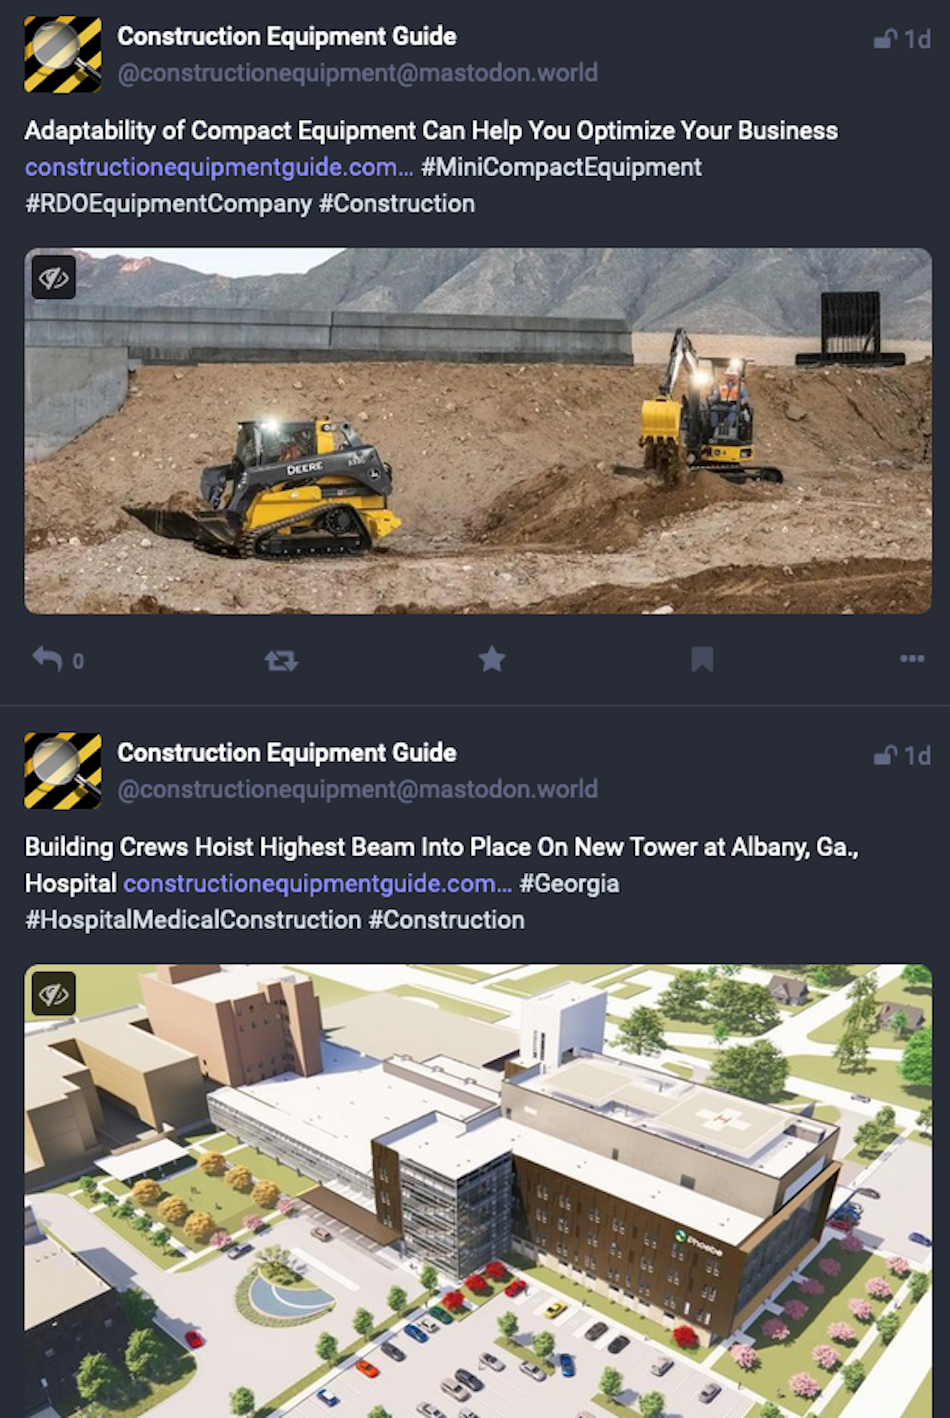 Deux publications sur la plateforme de médias sociaux Mastodon montrent le média d'information de l'industrie Construction Equipment Guide faisant la promotion des actualités de leur site.